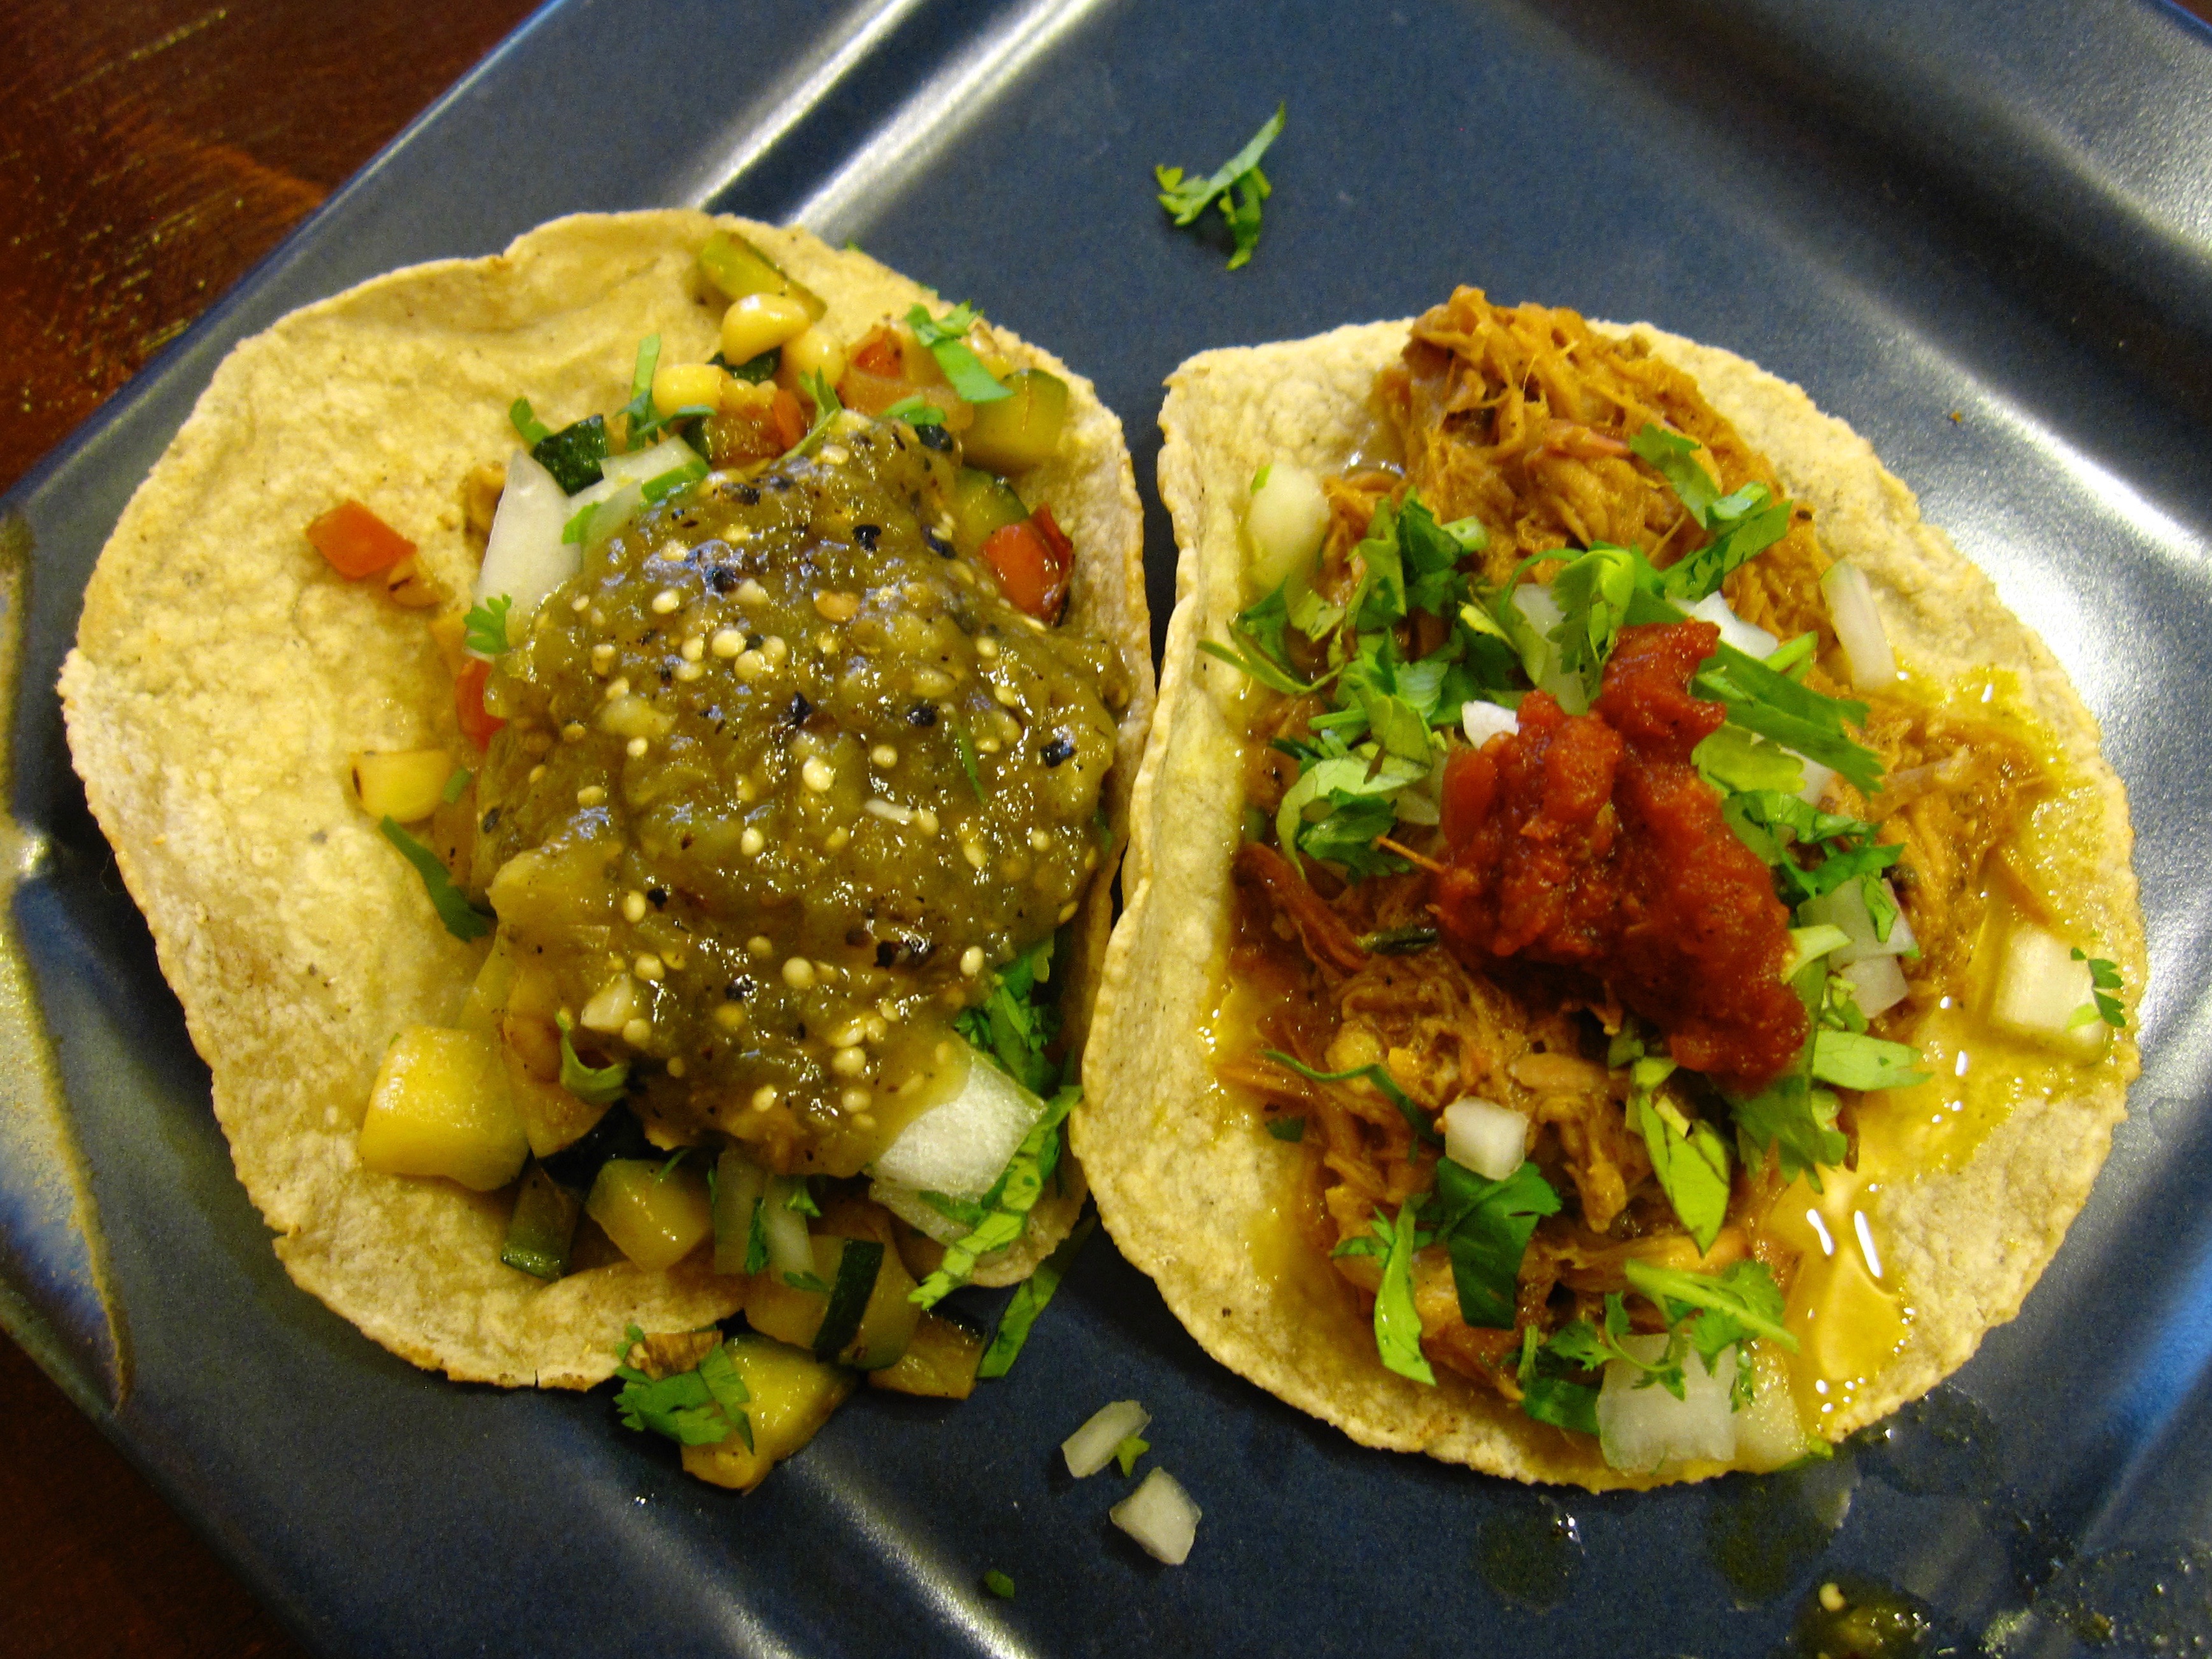 Tacos Los Angeles